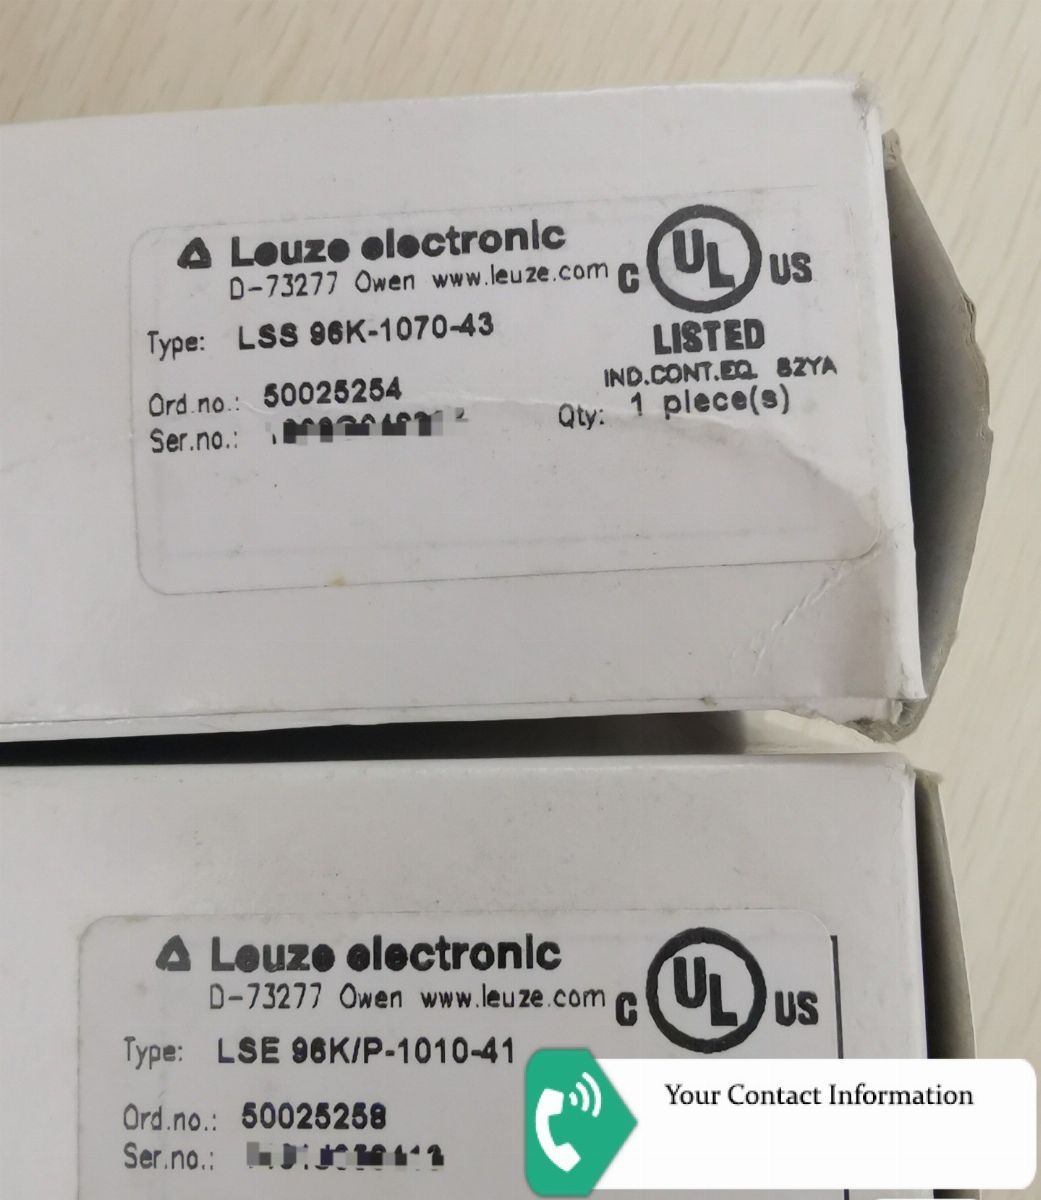 پروکسی سوئیچ مدل LSE 96K/P-1010-41  LSS 96k-1070-43 برند Leuze